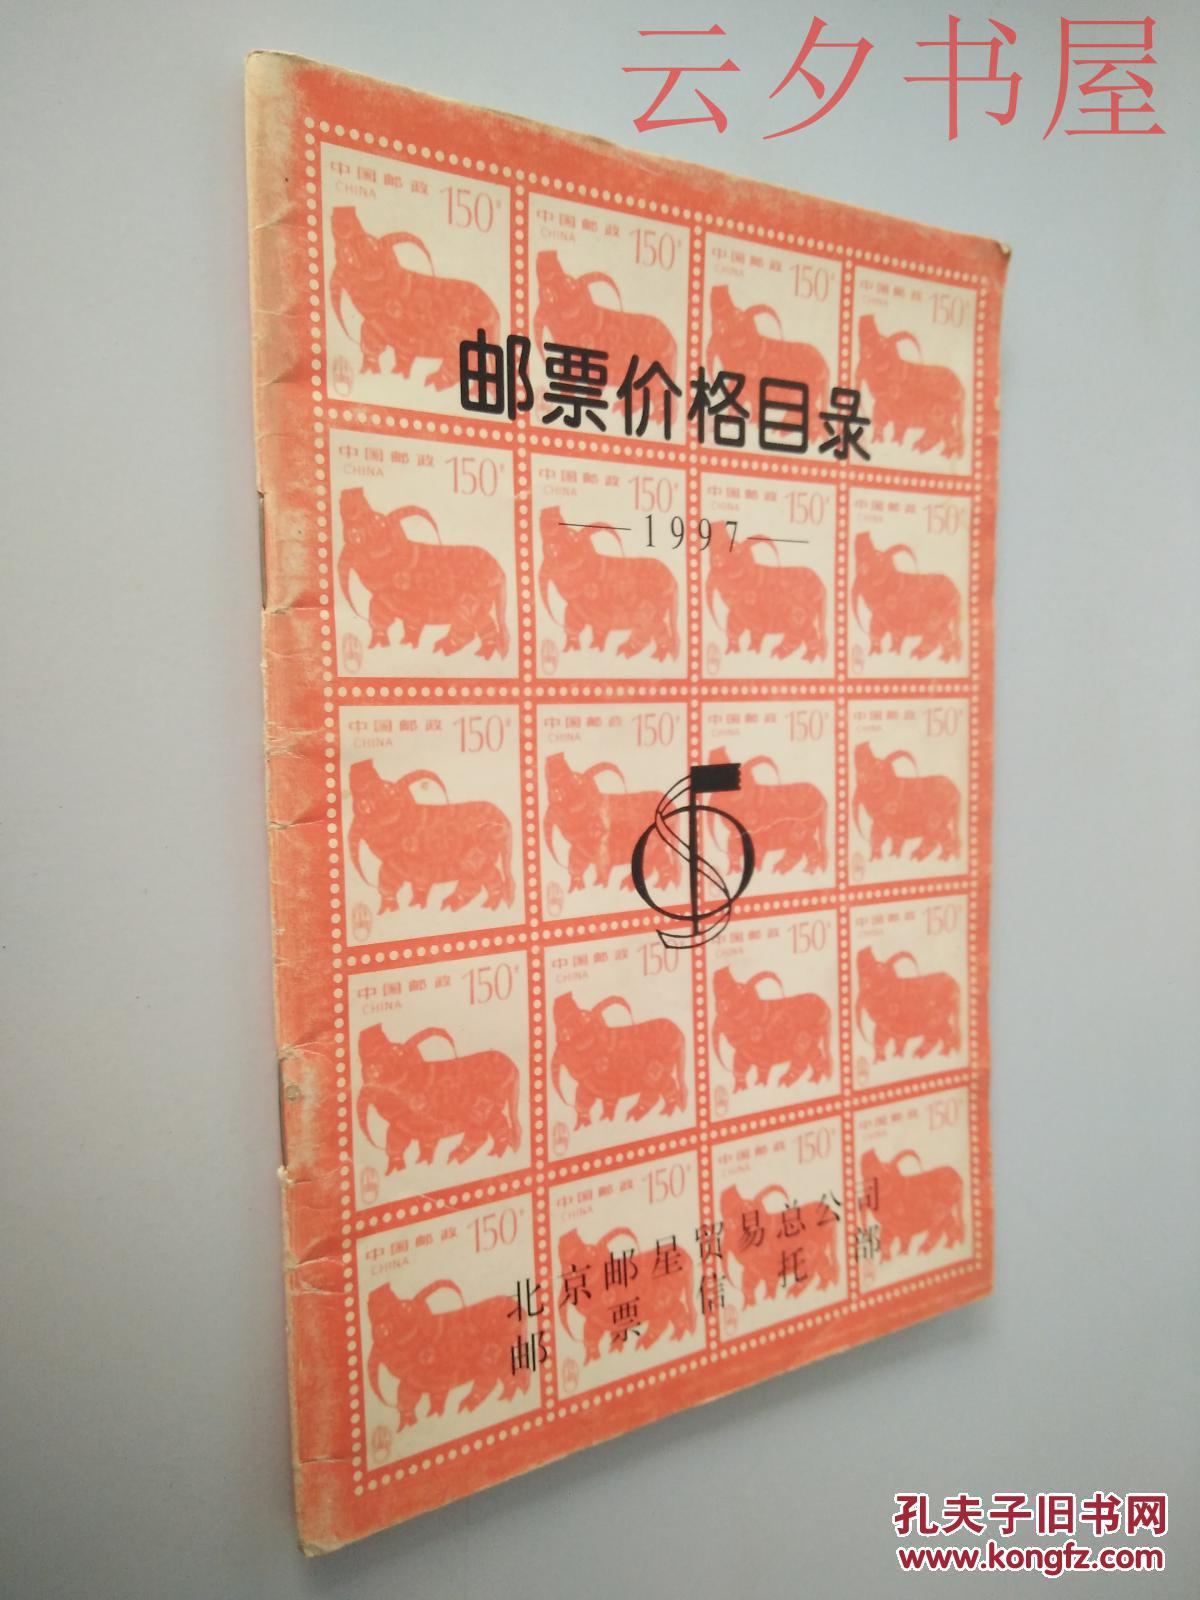 【图】邮票价格目录1997_北京邮星贸易总公司